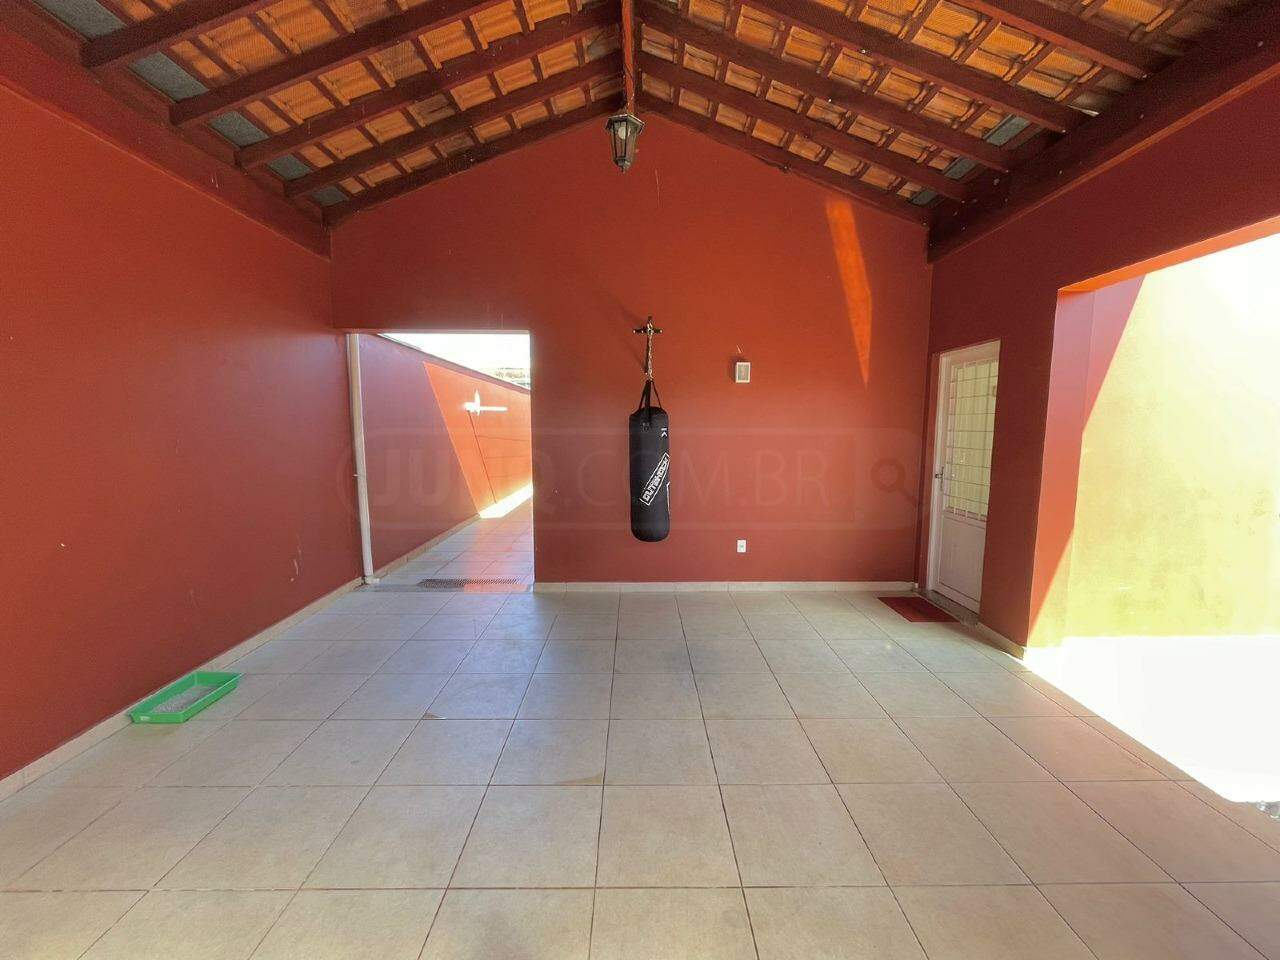 Casa à venda, 5 quartos, sendo 3 suítes, 3 vagas, no bairro Jardim Nova Iguaçu em Piracicaba - SP